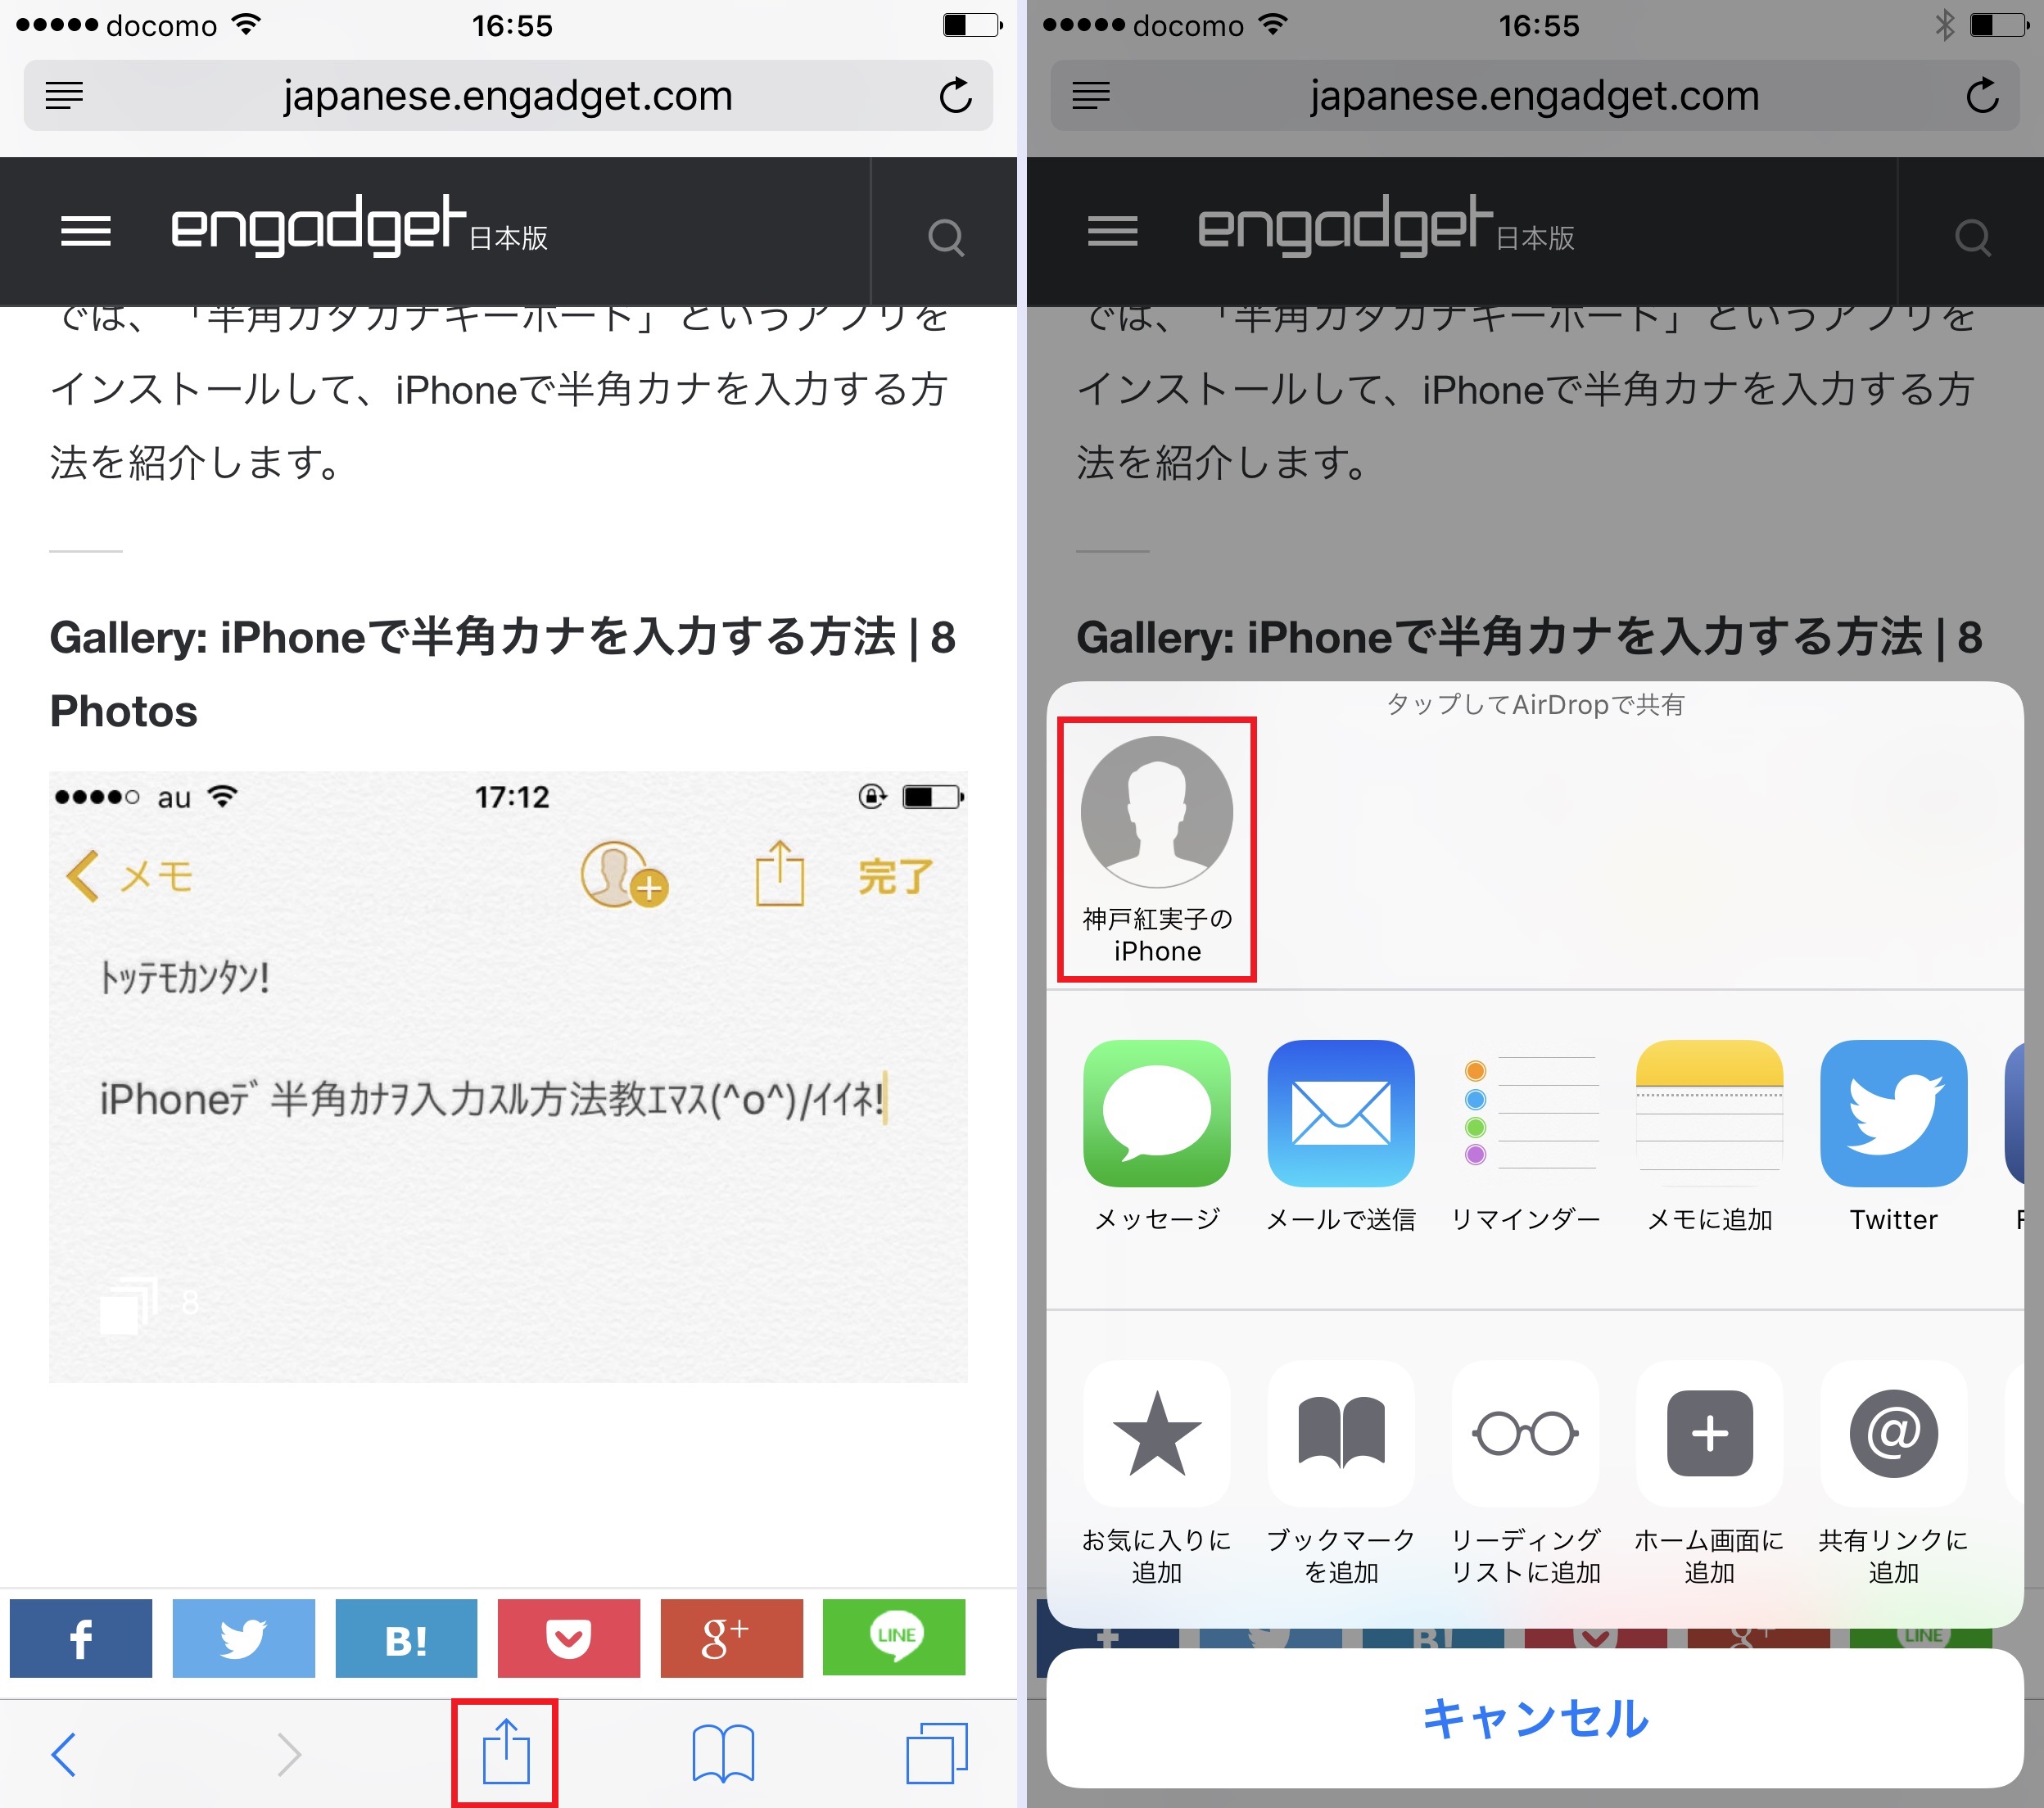 あなたの本名バレてますよ Airdropで第三者に本名を知られない方法 Iphone Tips Engadget 日本版